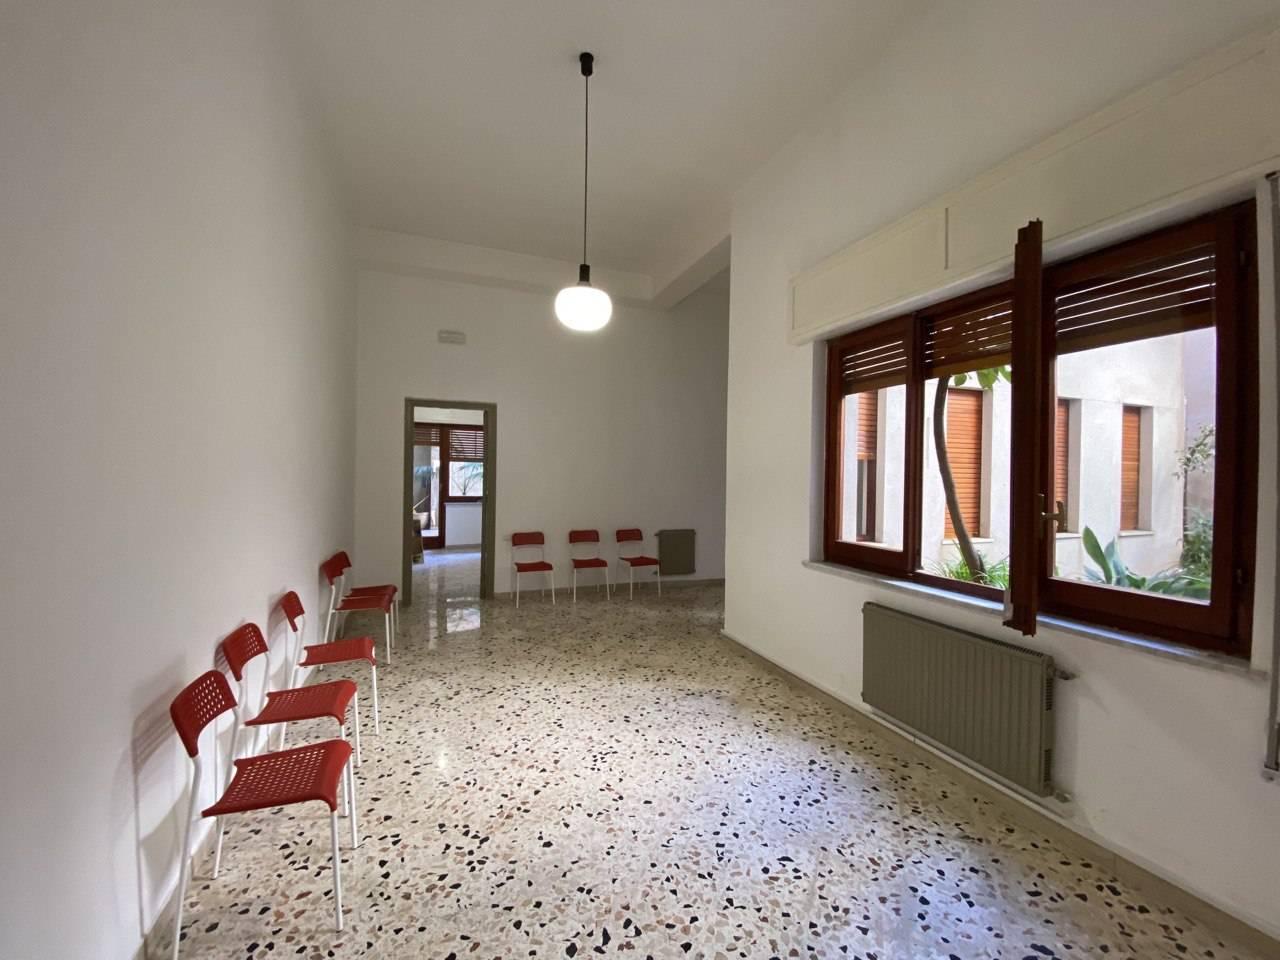 Ufficio condiviso in affitto a Castelvetrano